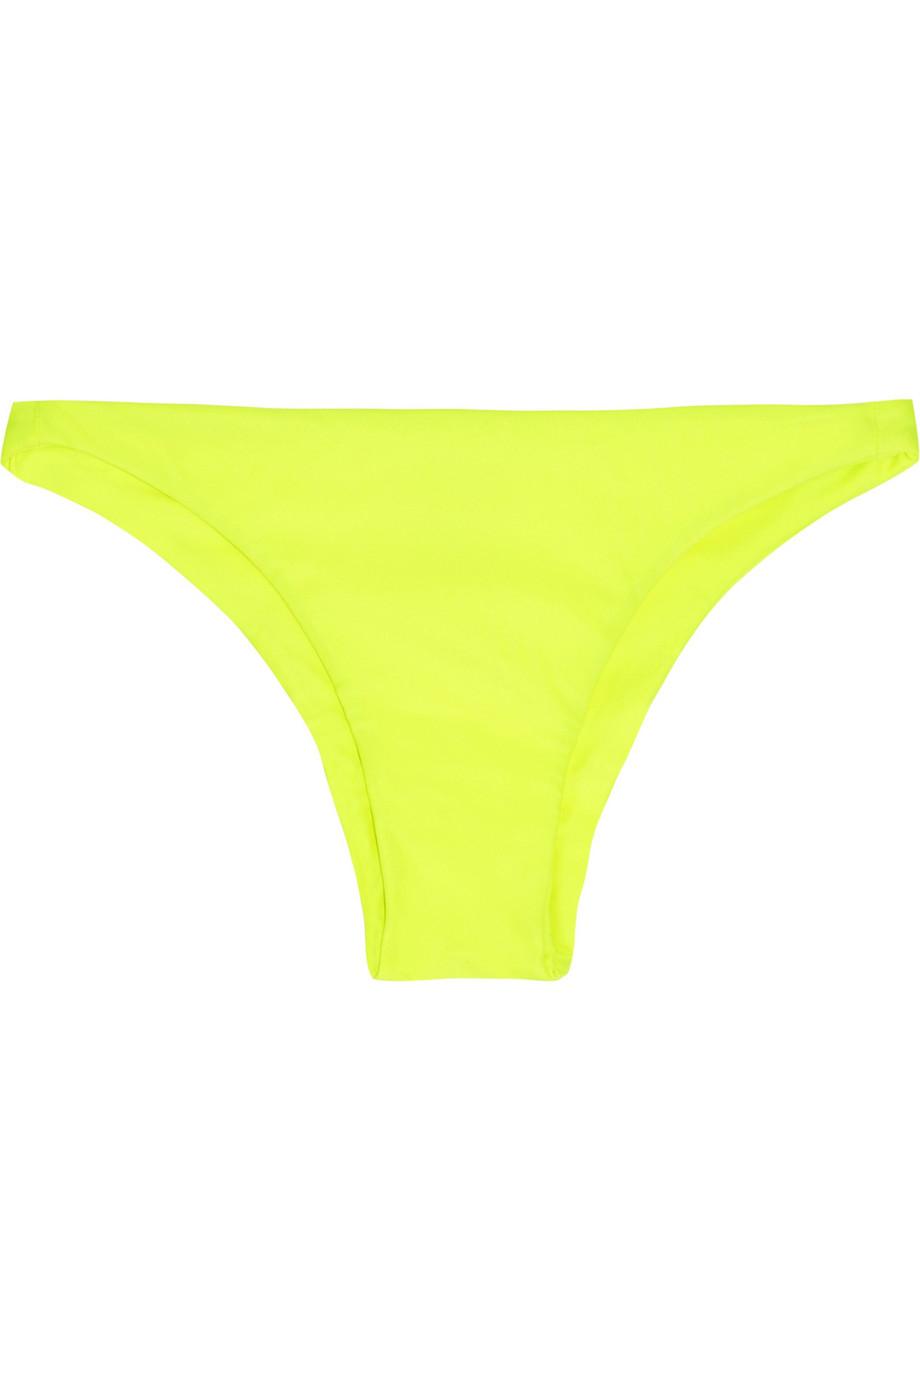 Mikoh Swimwear Miyako Neon Bikini Briefs in Yellow | Lyst